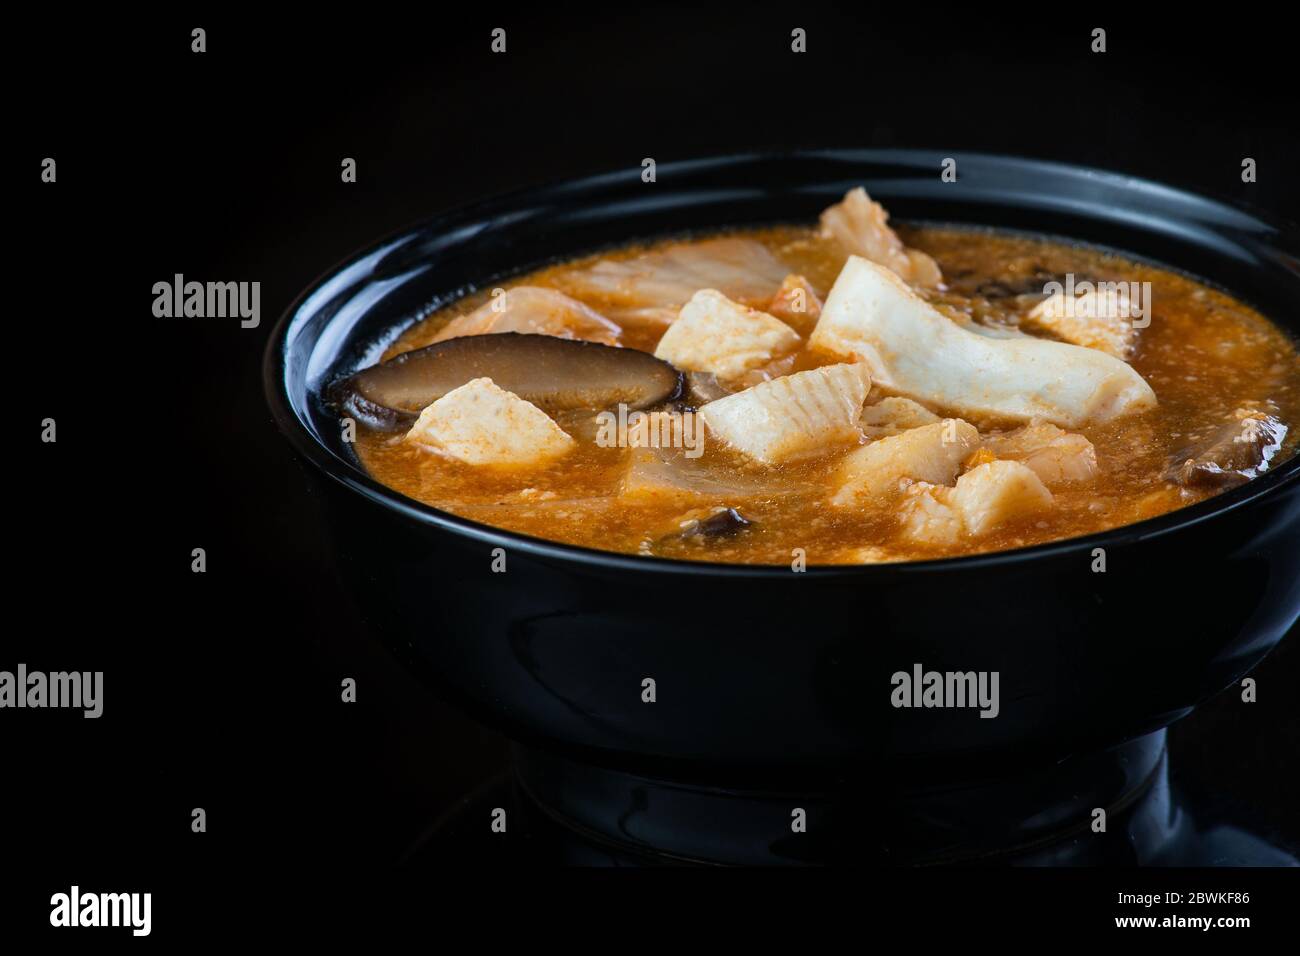 Soupe japonaise au poulet, œuf, champignons Simeji et aubergine sur fond sombre dans une assiette noire. Gros plan Banque D'Images